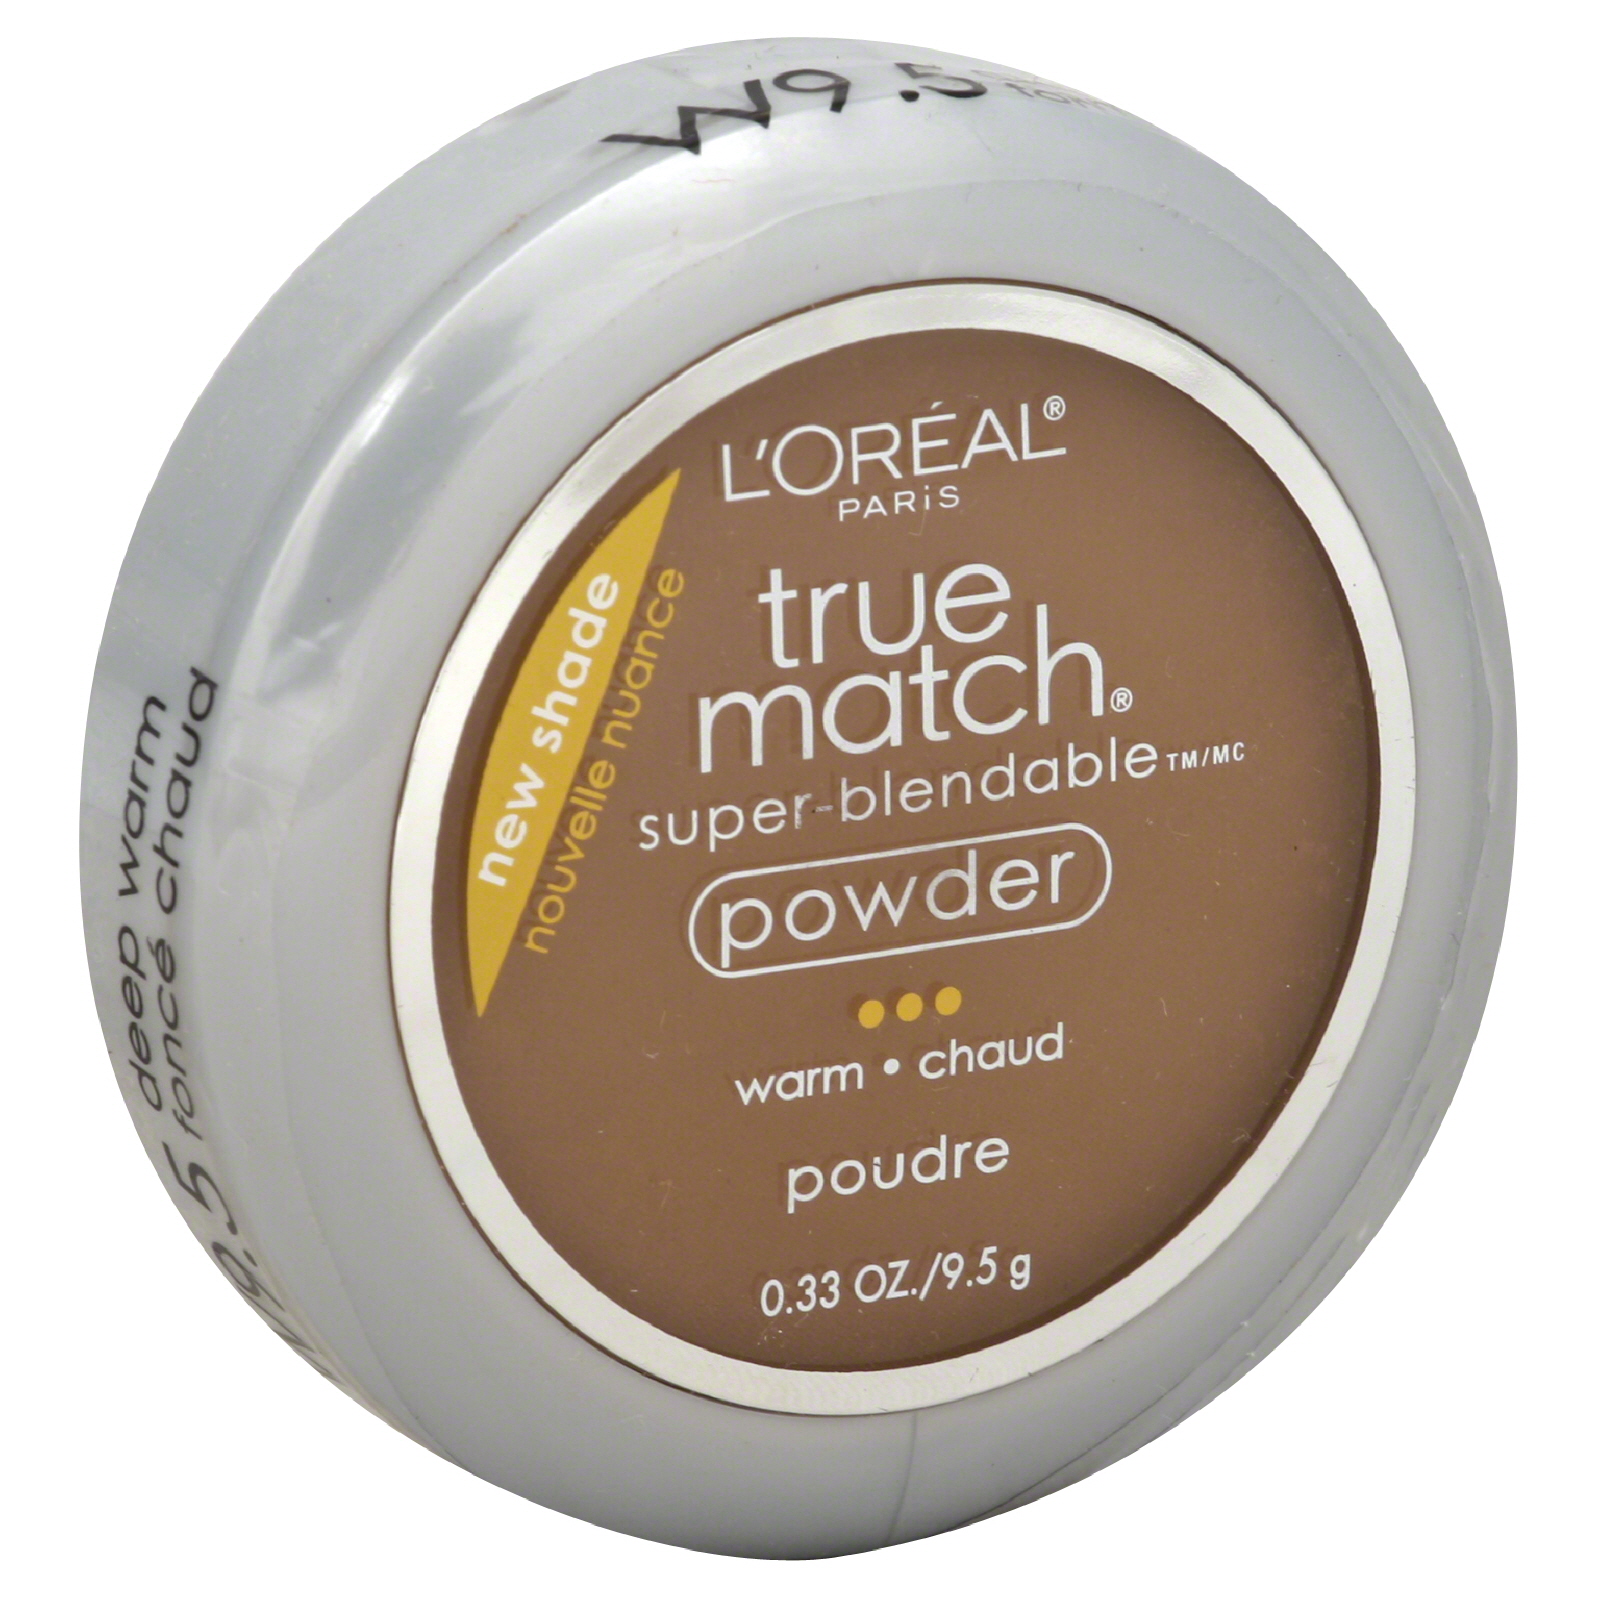 L'Oreal True Match Foundation Powder Deep Warm, 0.33 oz, 9.5 g